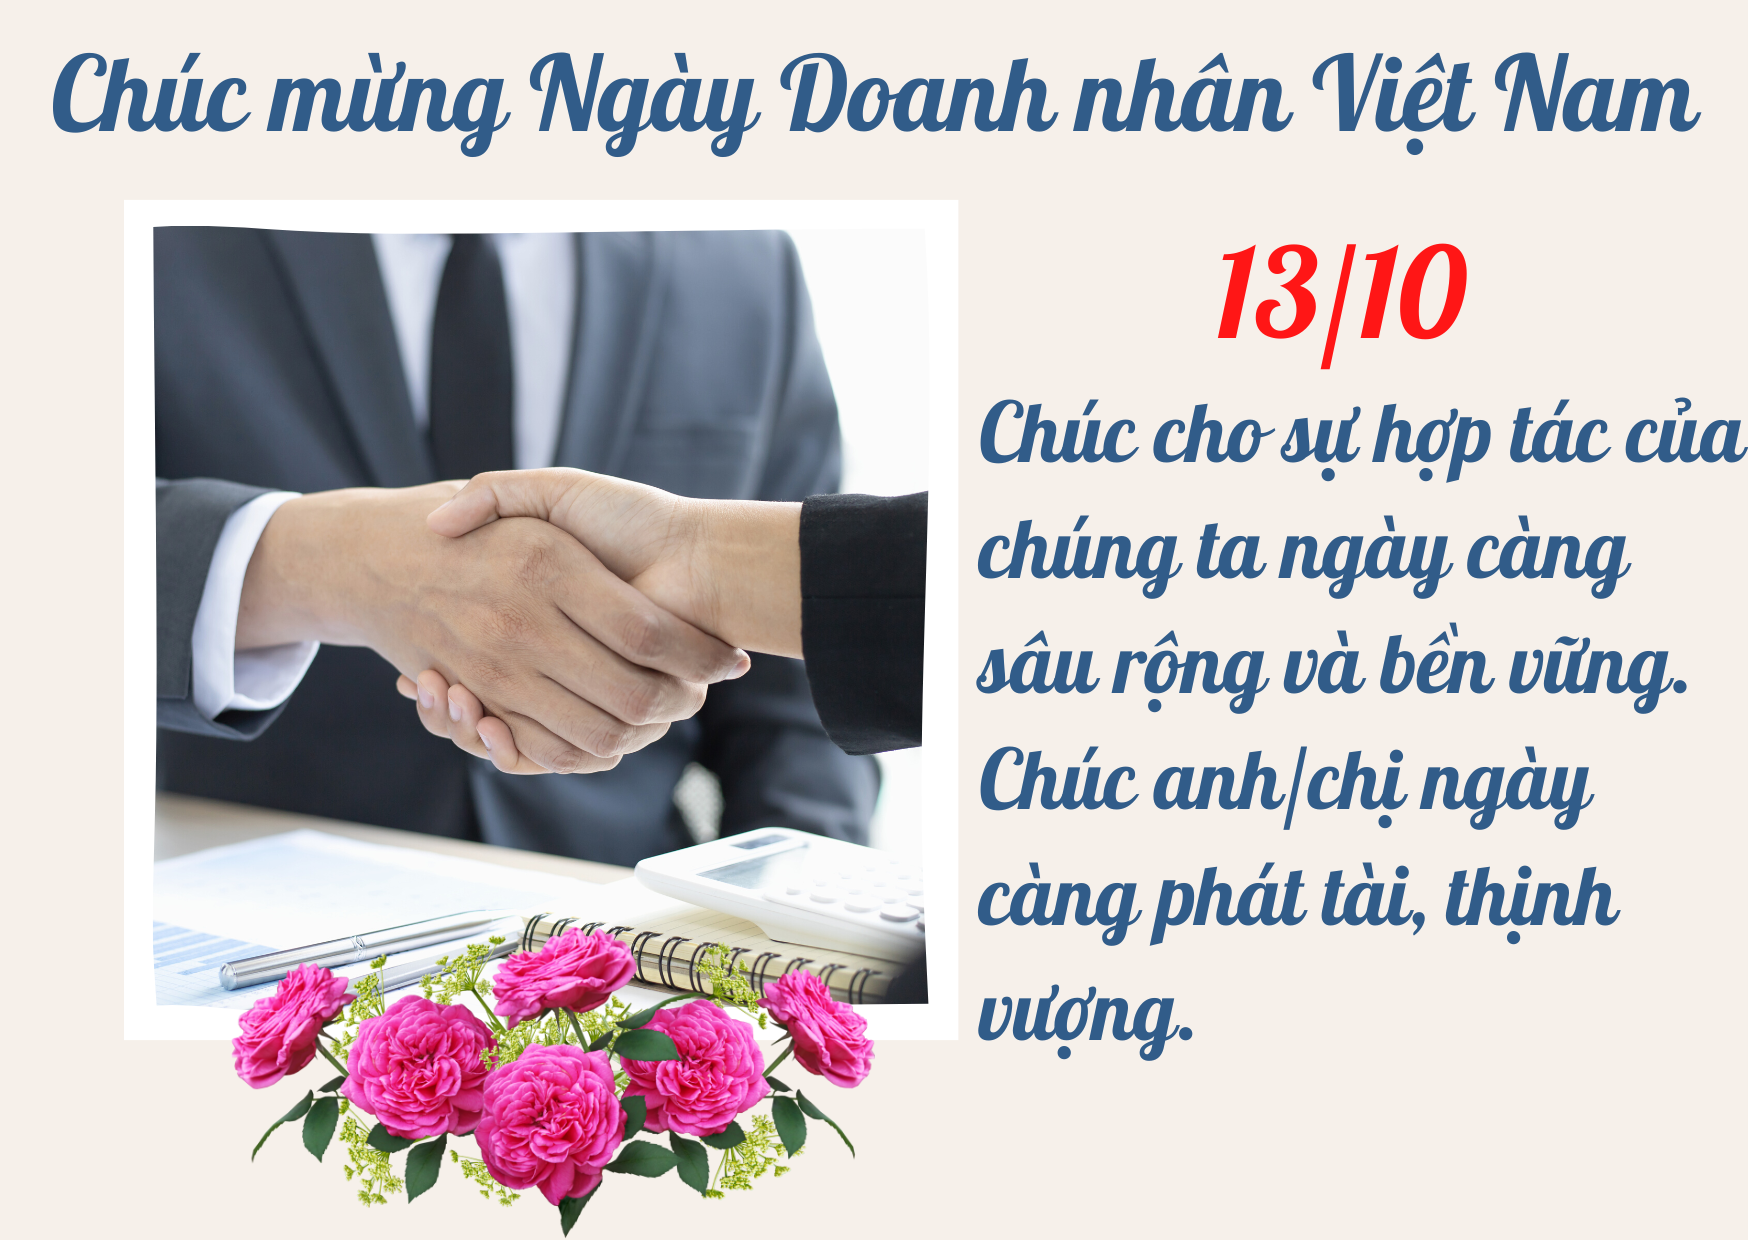 Doanh nhân Việt Nam: Thưởng thức những hình ảnh đầy cảm hứng về các doanh nhân Việt Nam và những câu chuyện thành công của họ. Những hình ảnh này sẽ giúp bạn cảm nhận được tinh thần khởi nghiệp, sự kiên trì và đam mê của các doanh nhân Việt Nam.